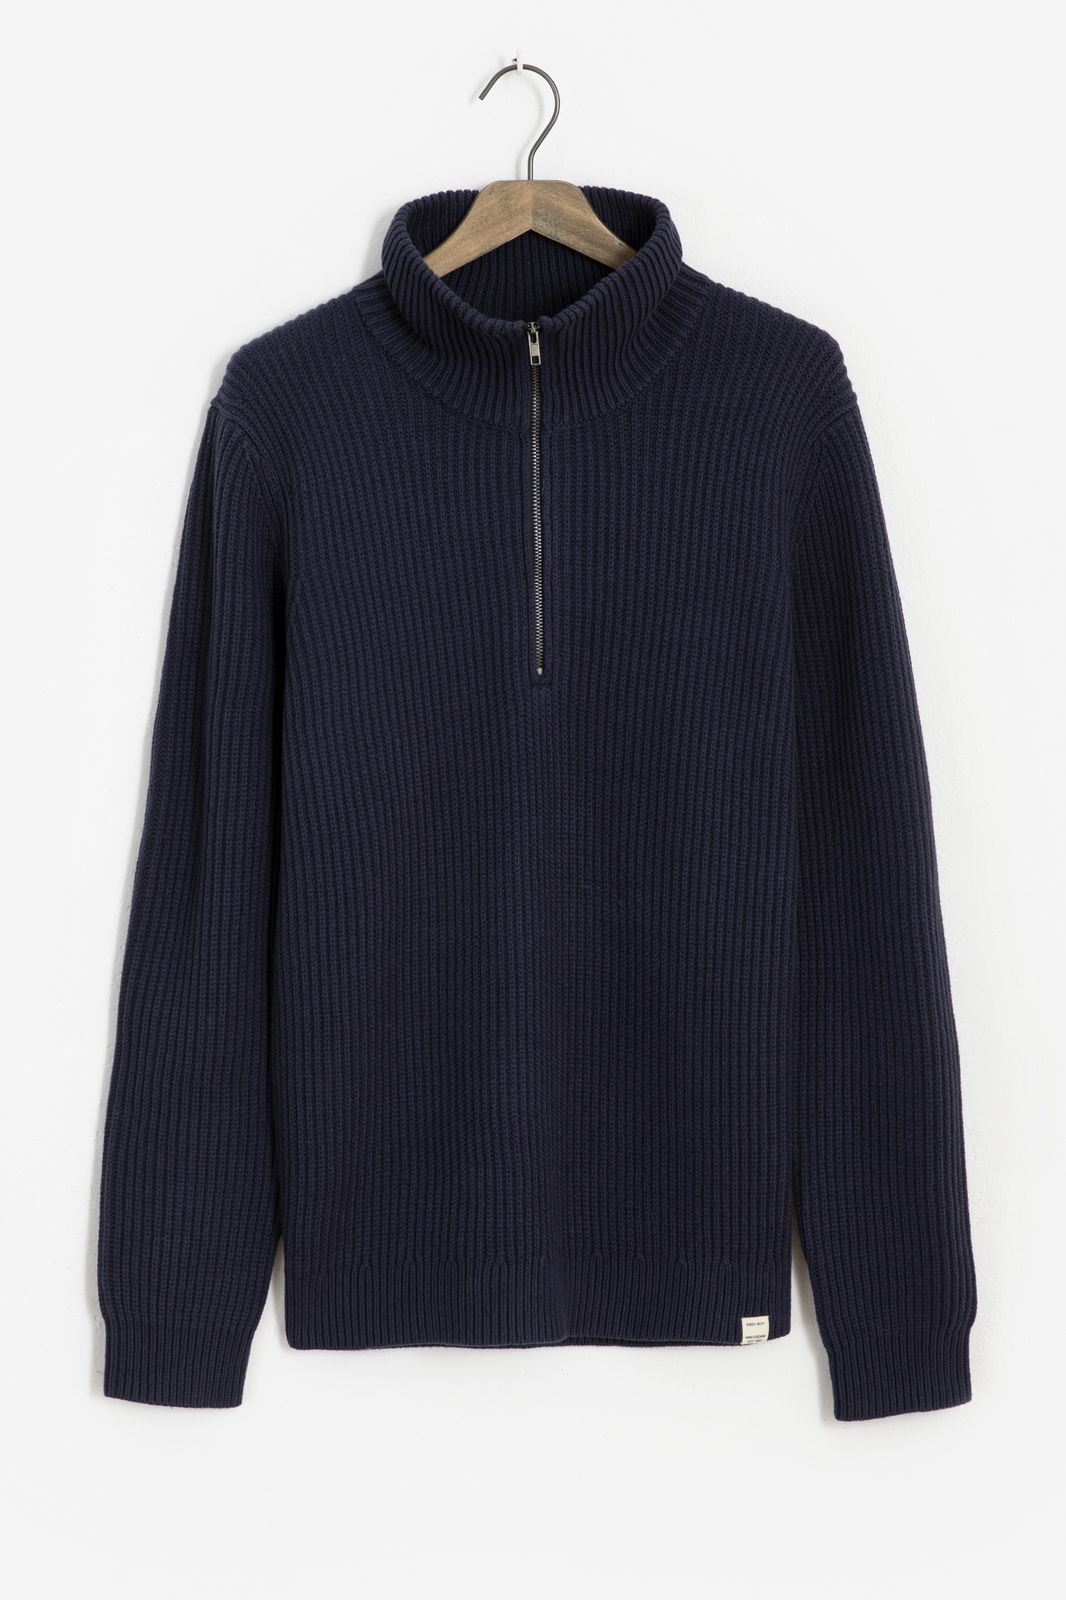 Baumwoll-Pullover mit Reißverschluss - dunkelblau